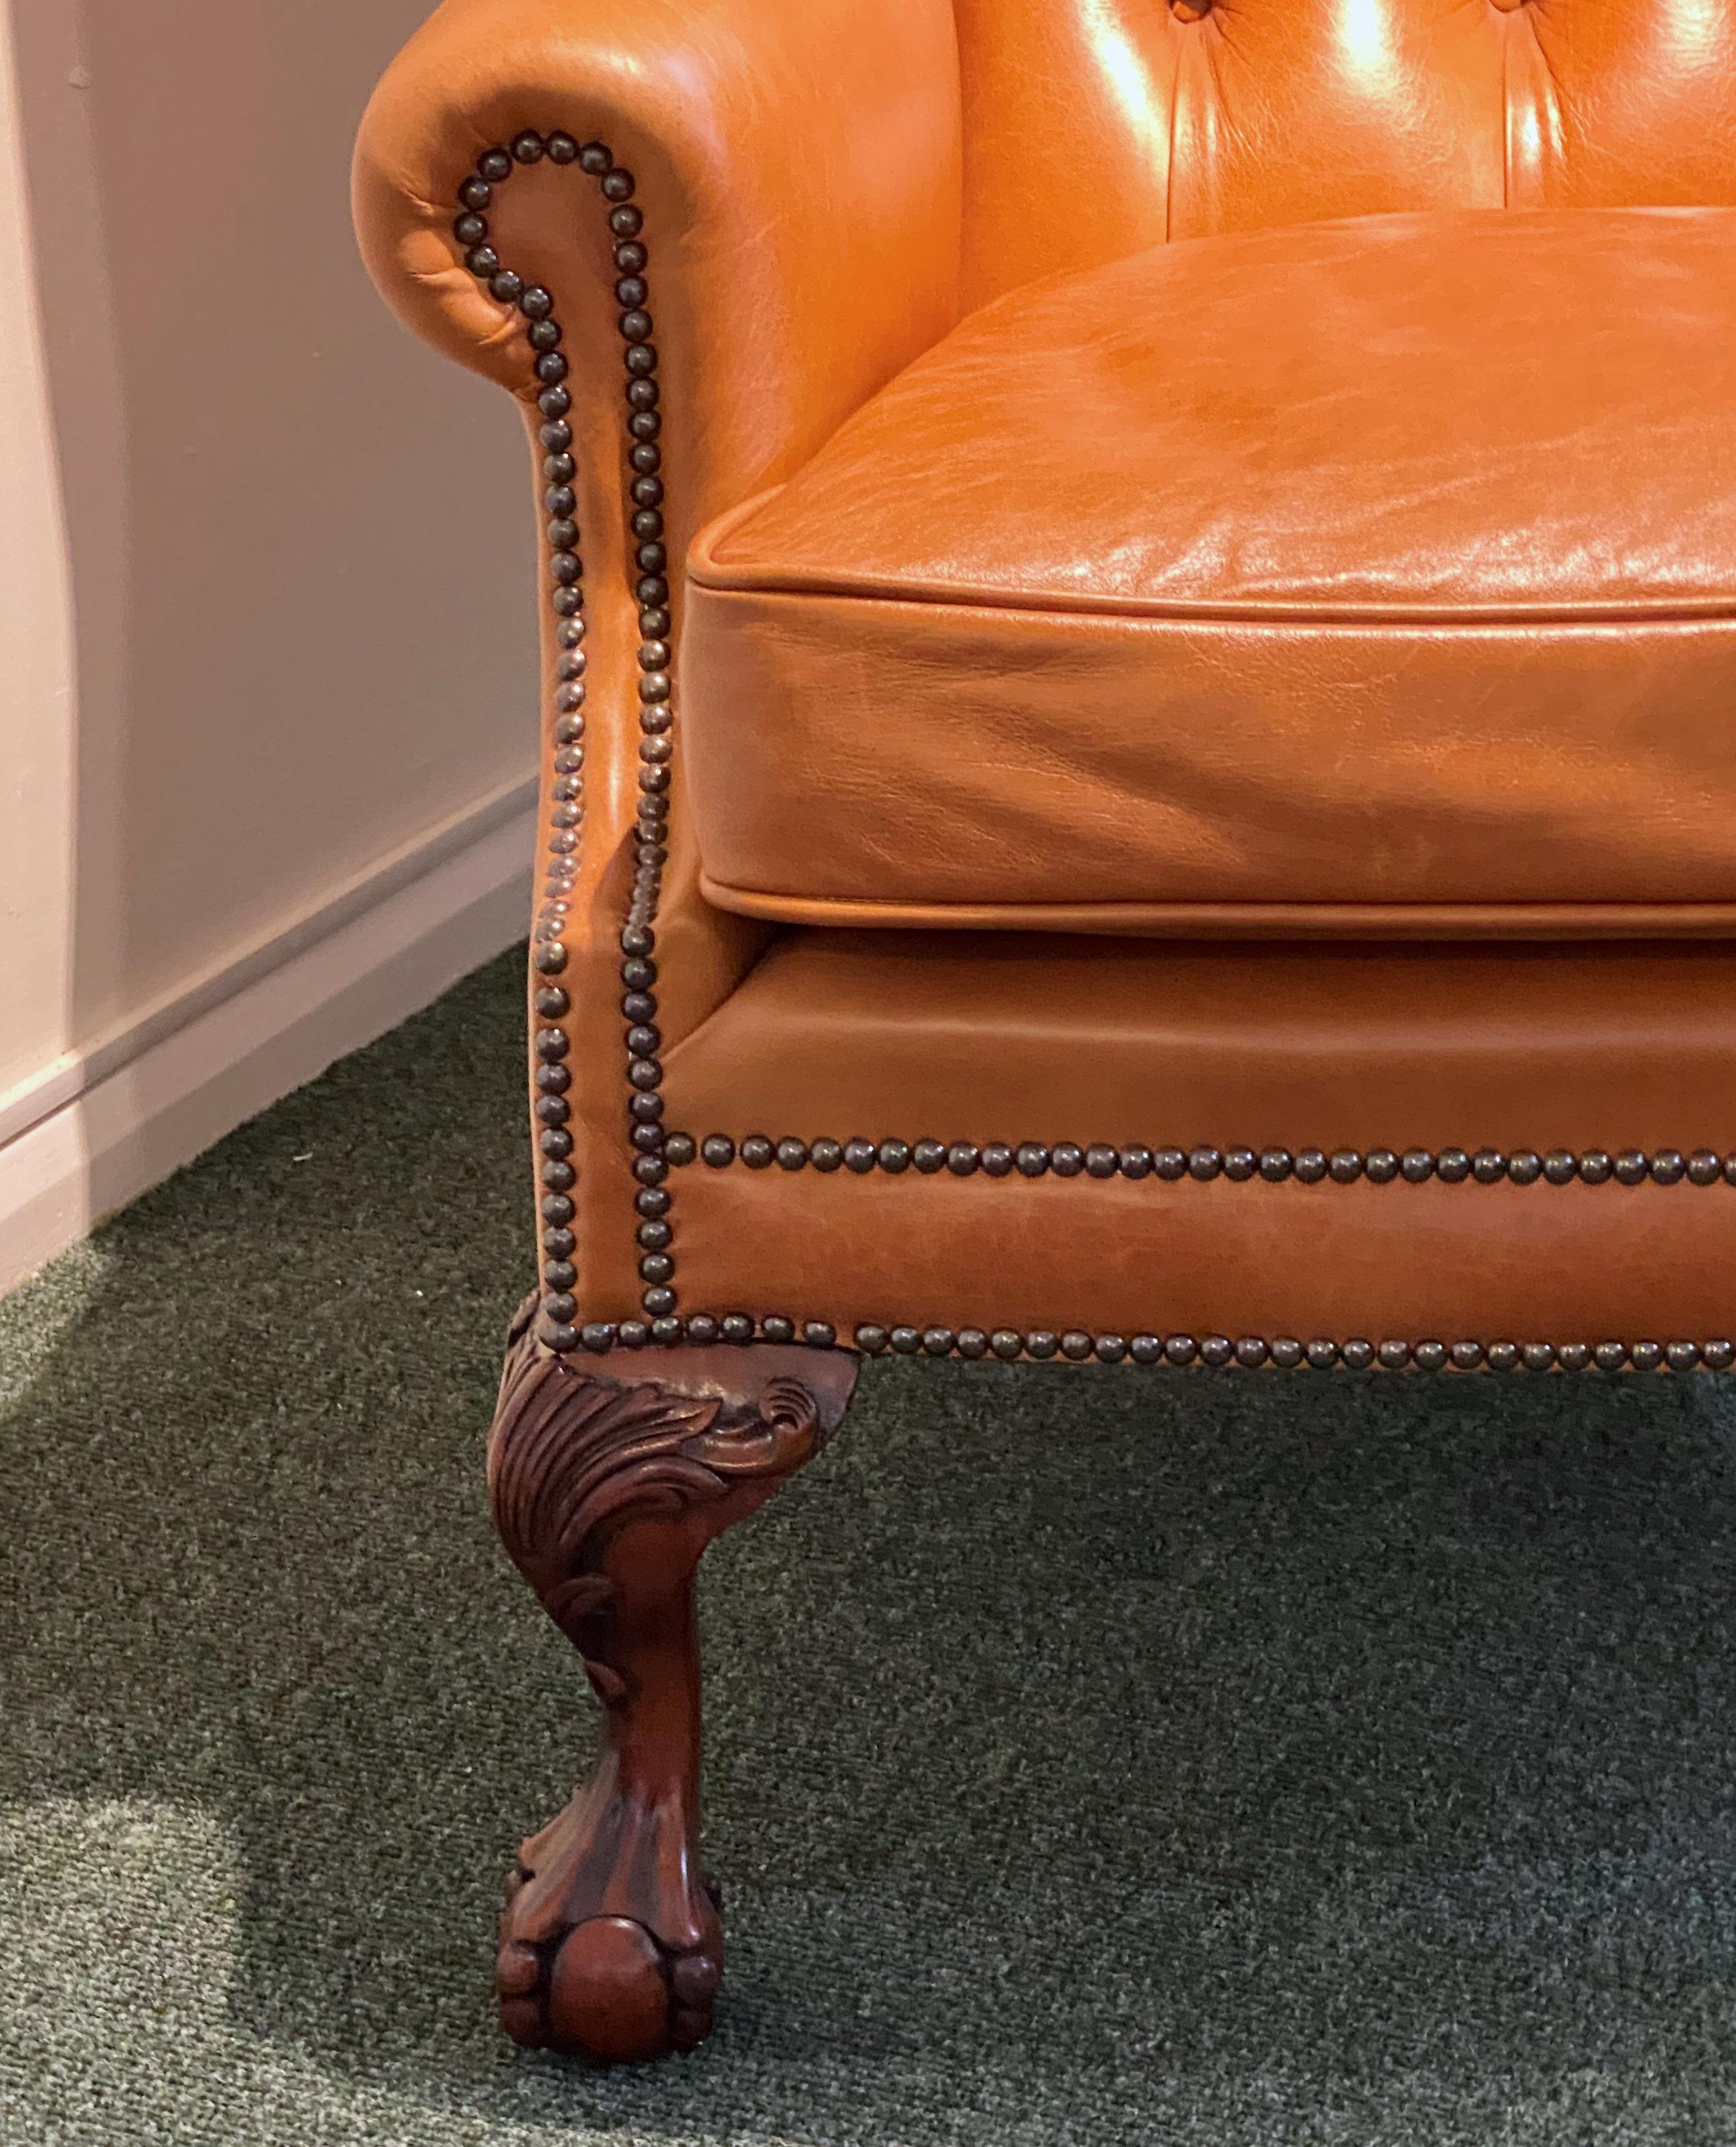 Dieser englische Ledersessel im klassischen Stil des 18. Jahrhunderts zeichnet sich durch gerollte Rückenlehnen und Metallnieten-Details aus. Der Stuhl ist mit wunderschönem, weichem Leder in Siena gepolstert und hat ein separates, mit Federn